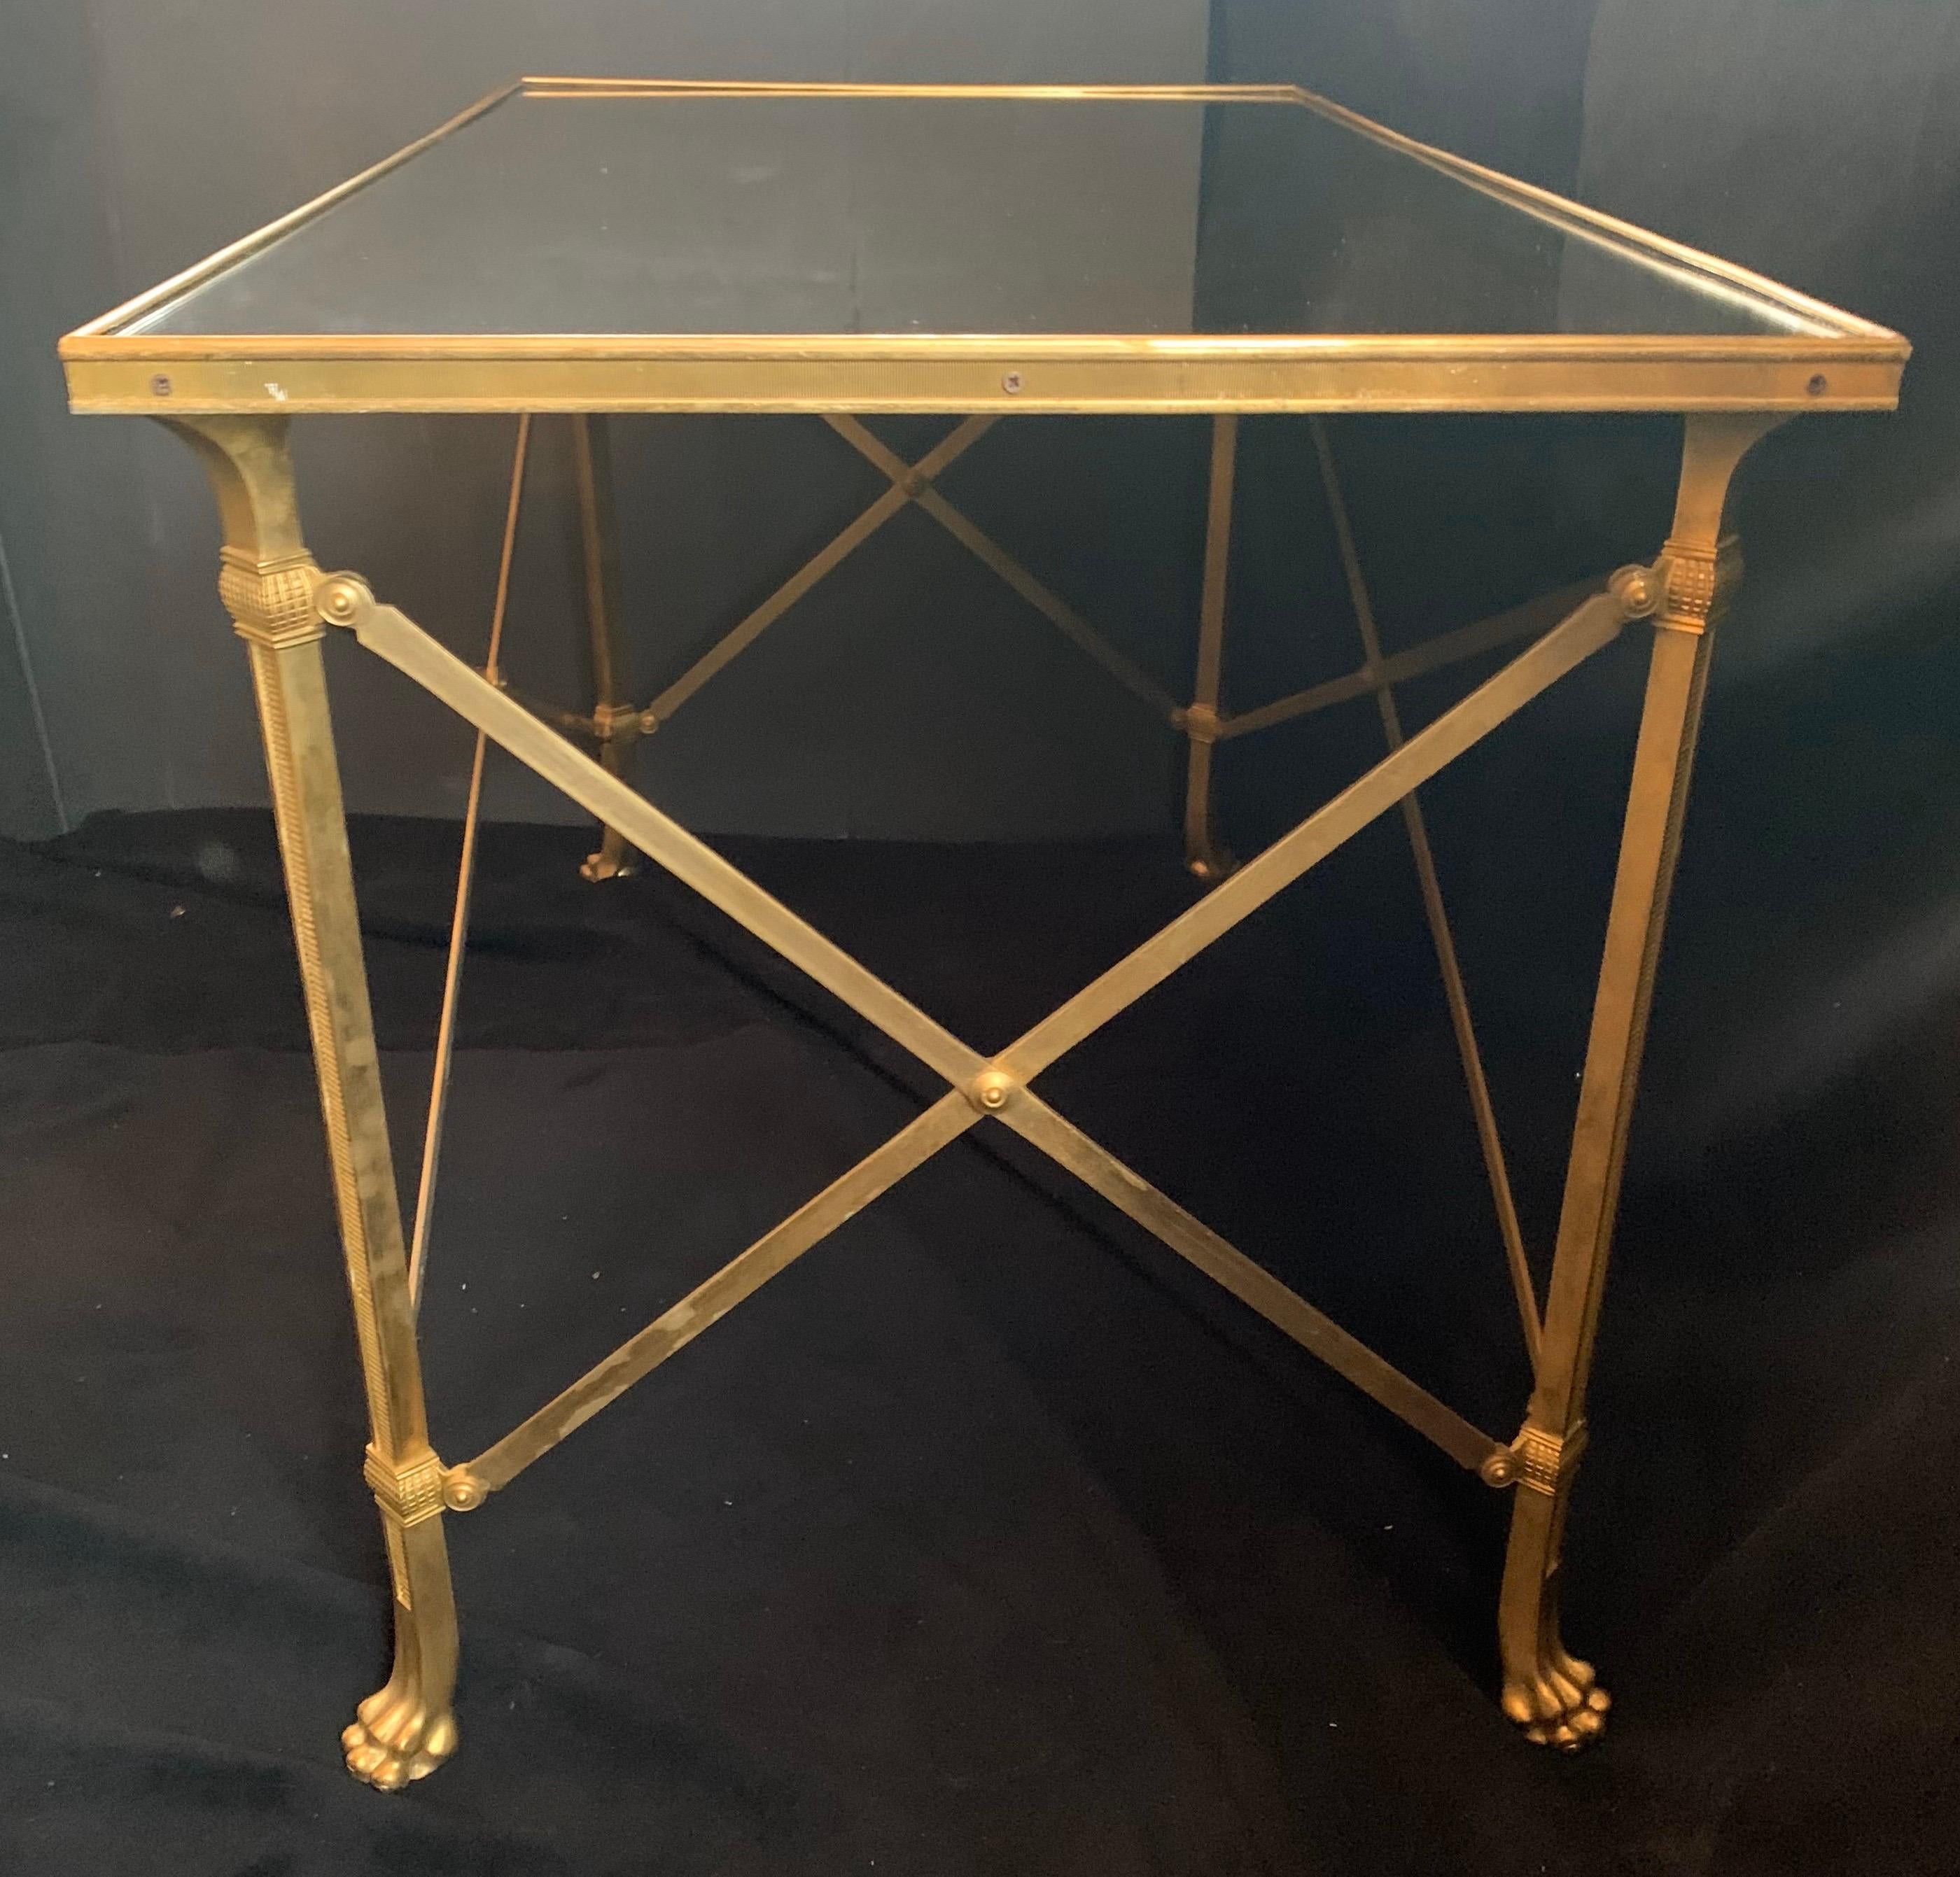 Une merveilleuse table d'appoint / table basse de style Régence en bronze doré et miroir vieilli avec pieds en pattes, vendue par le Lorin Marsh Showroom dans le D & D Building NYC.